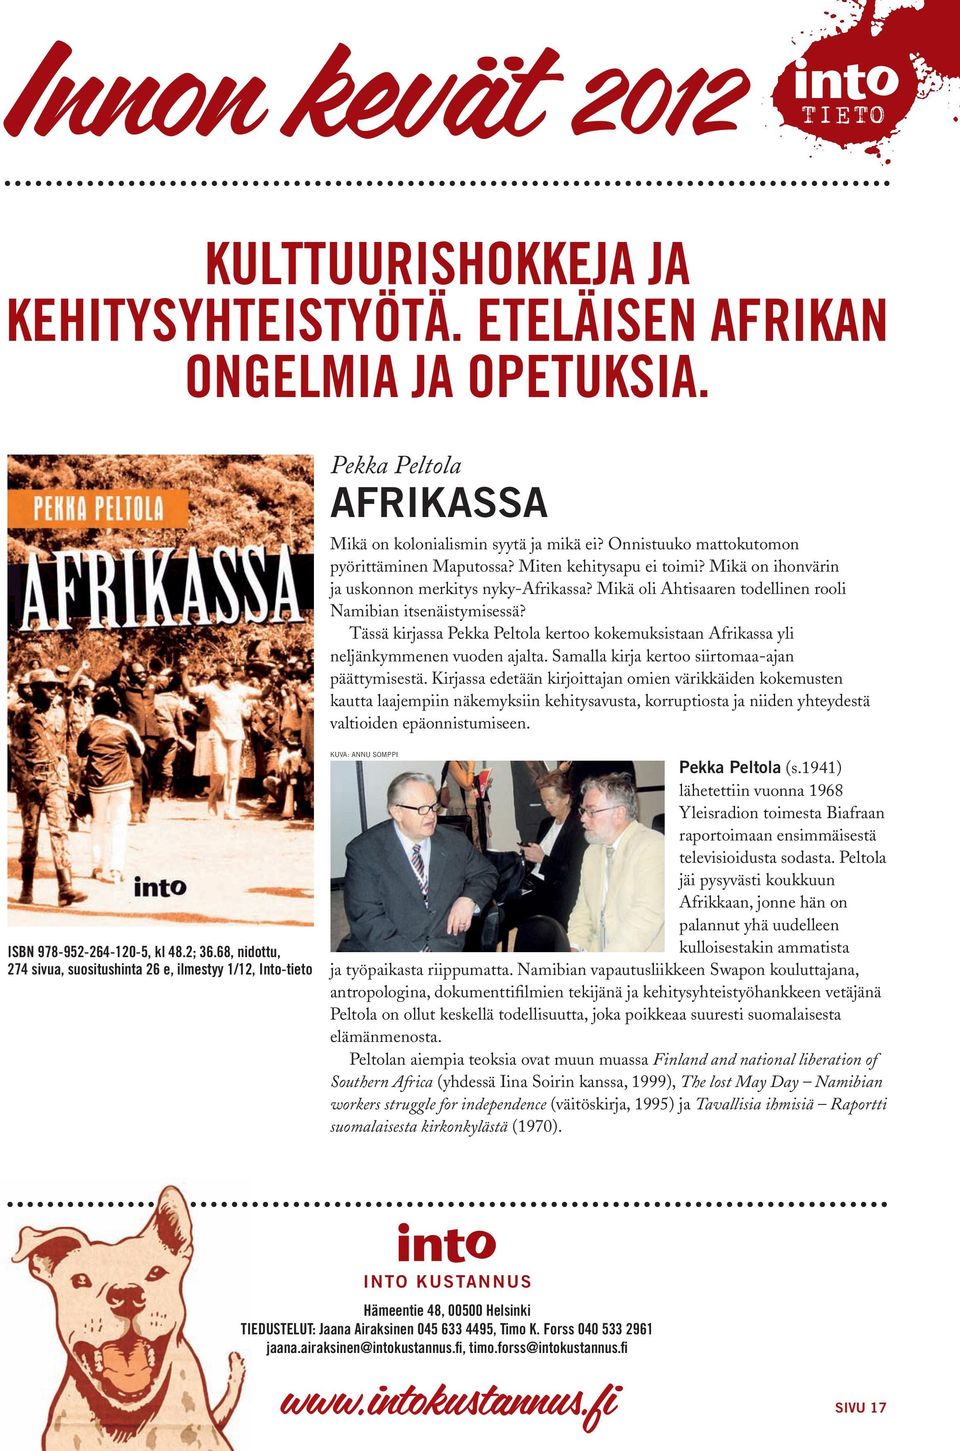 Tässä kirjassa Pekka Peltola kertoo kokemuksistaan Afrikassa yli neljänkymmenen vuoden ajalta. Samalla kirja kertoo siirtomaa-ajan päättymisestä.